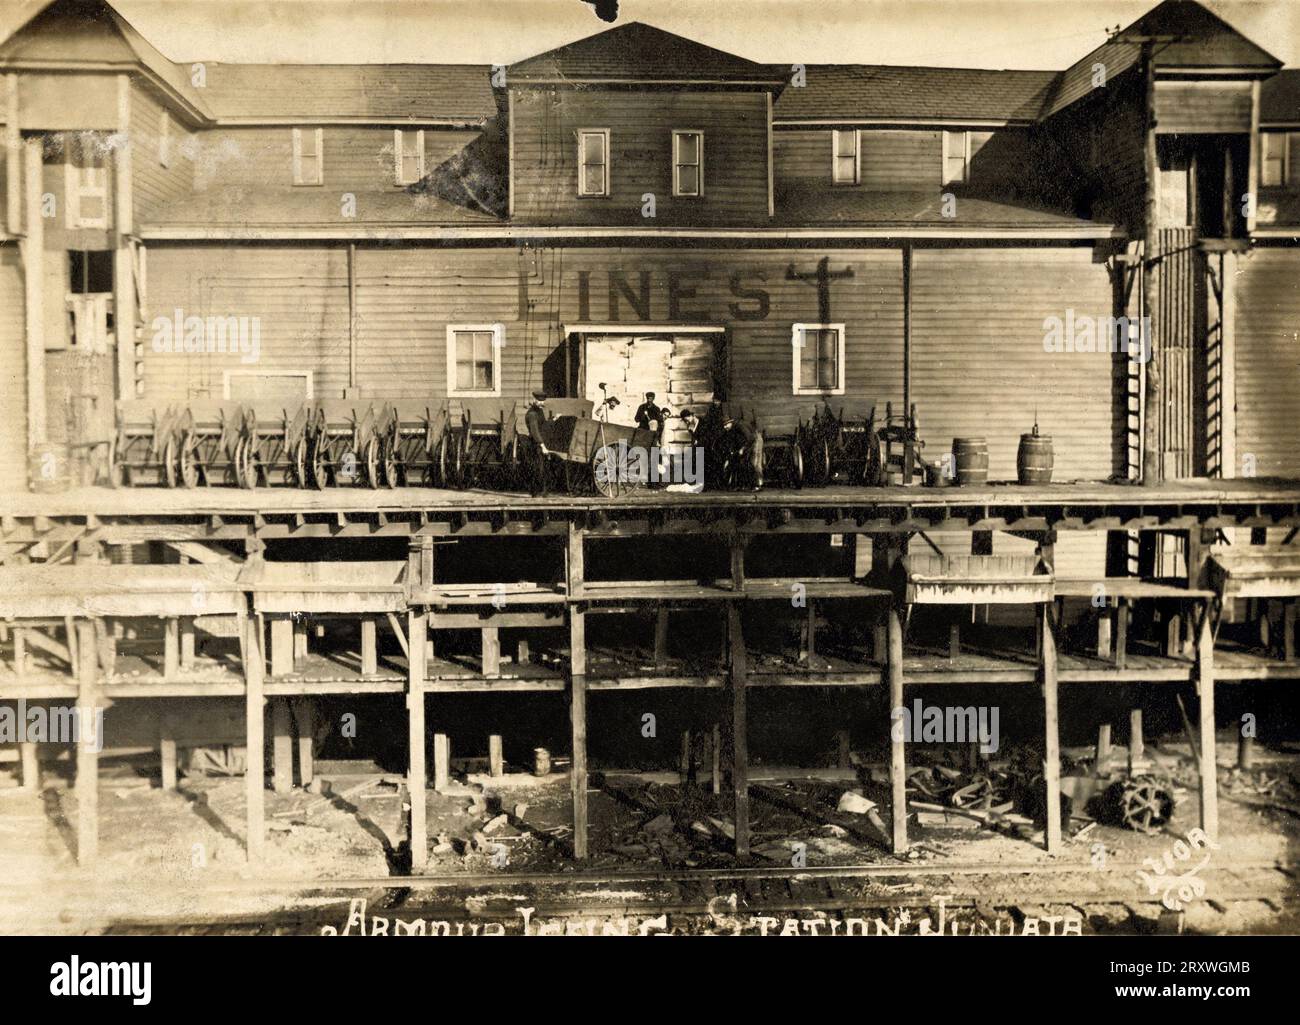 Histoire des chemins de fer, Histoire des trains, Icing Station 1900s, voiture de train réfrigérée, Juniata Pennsylvania Banque D'Images